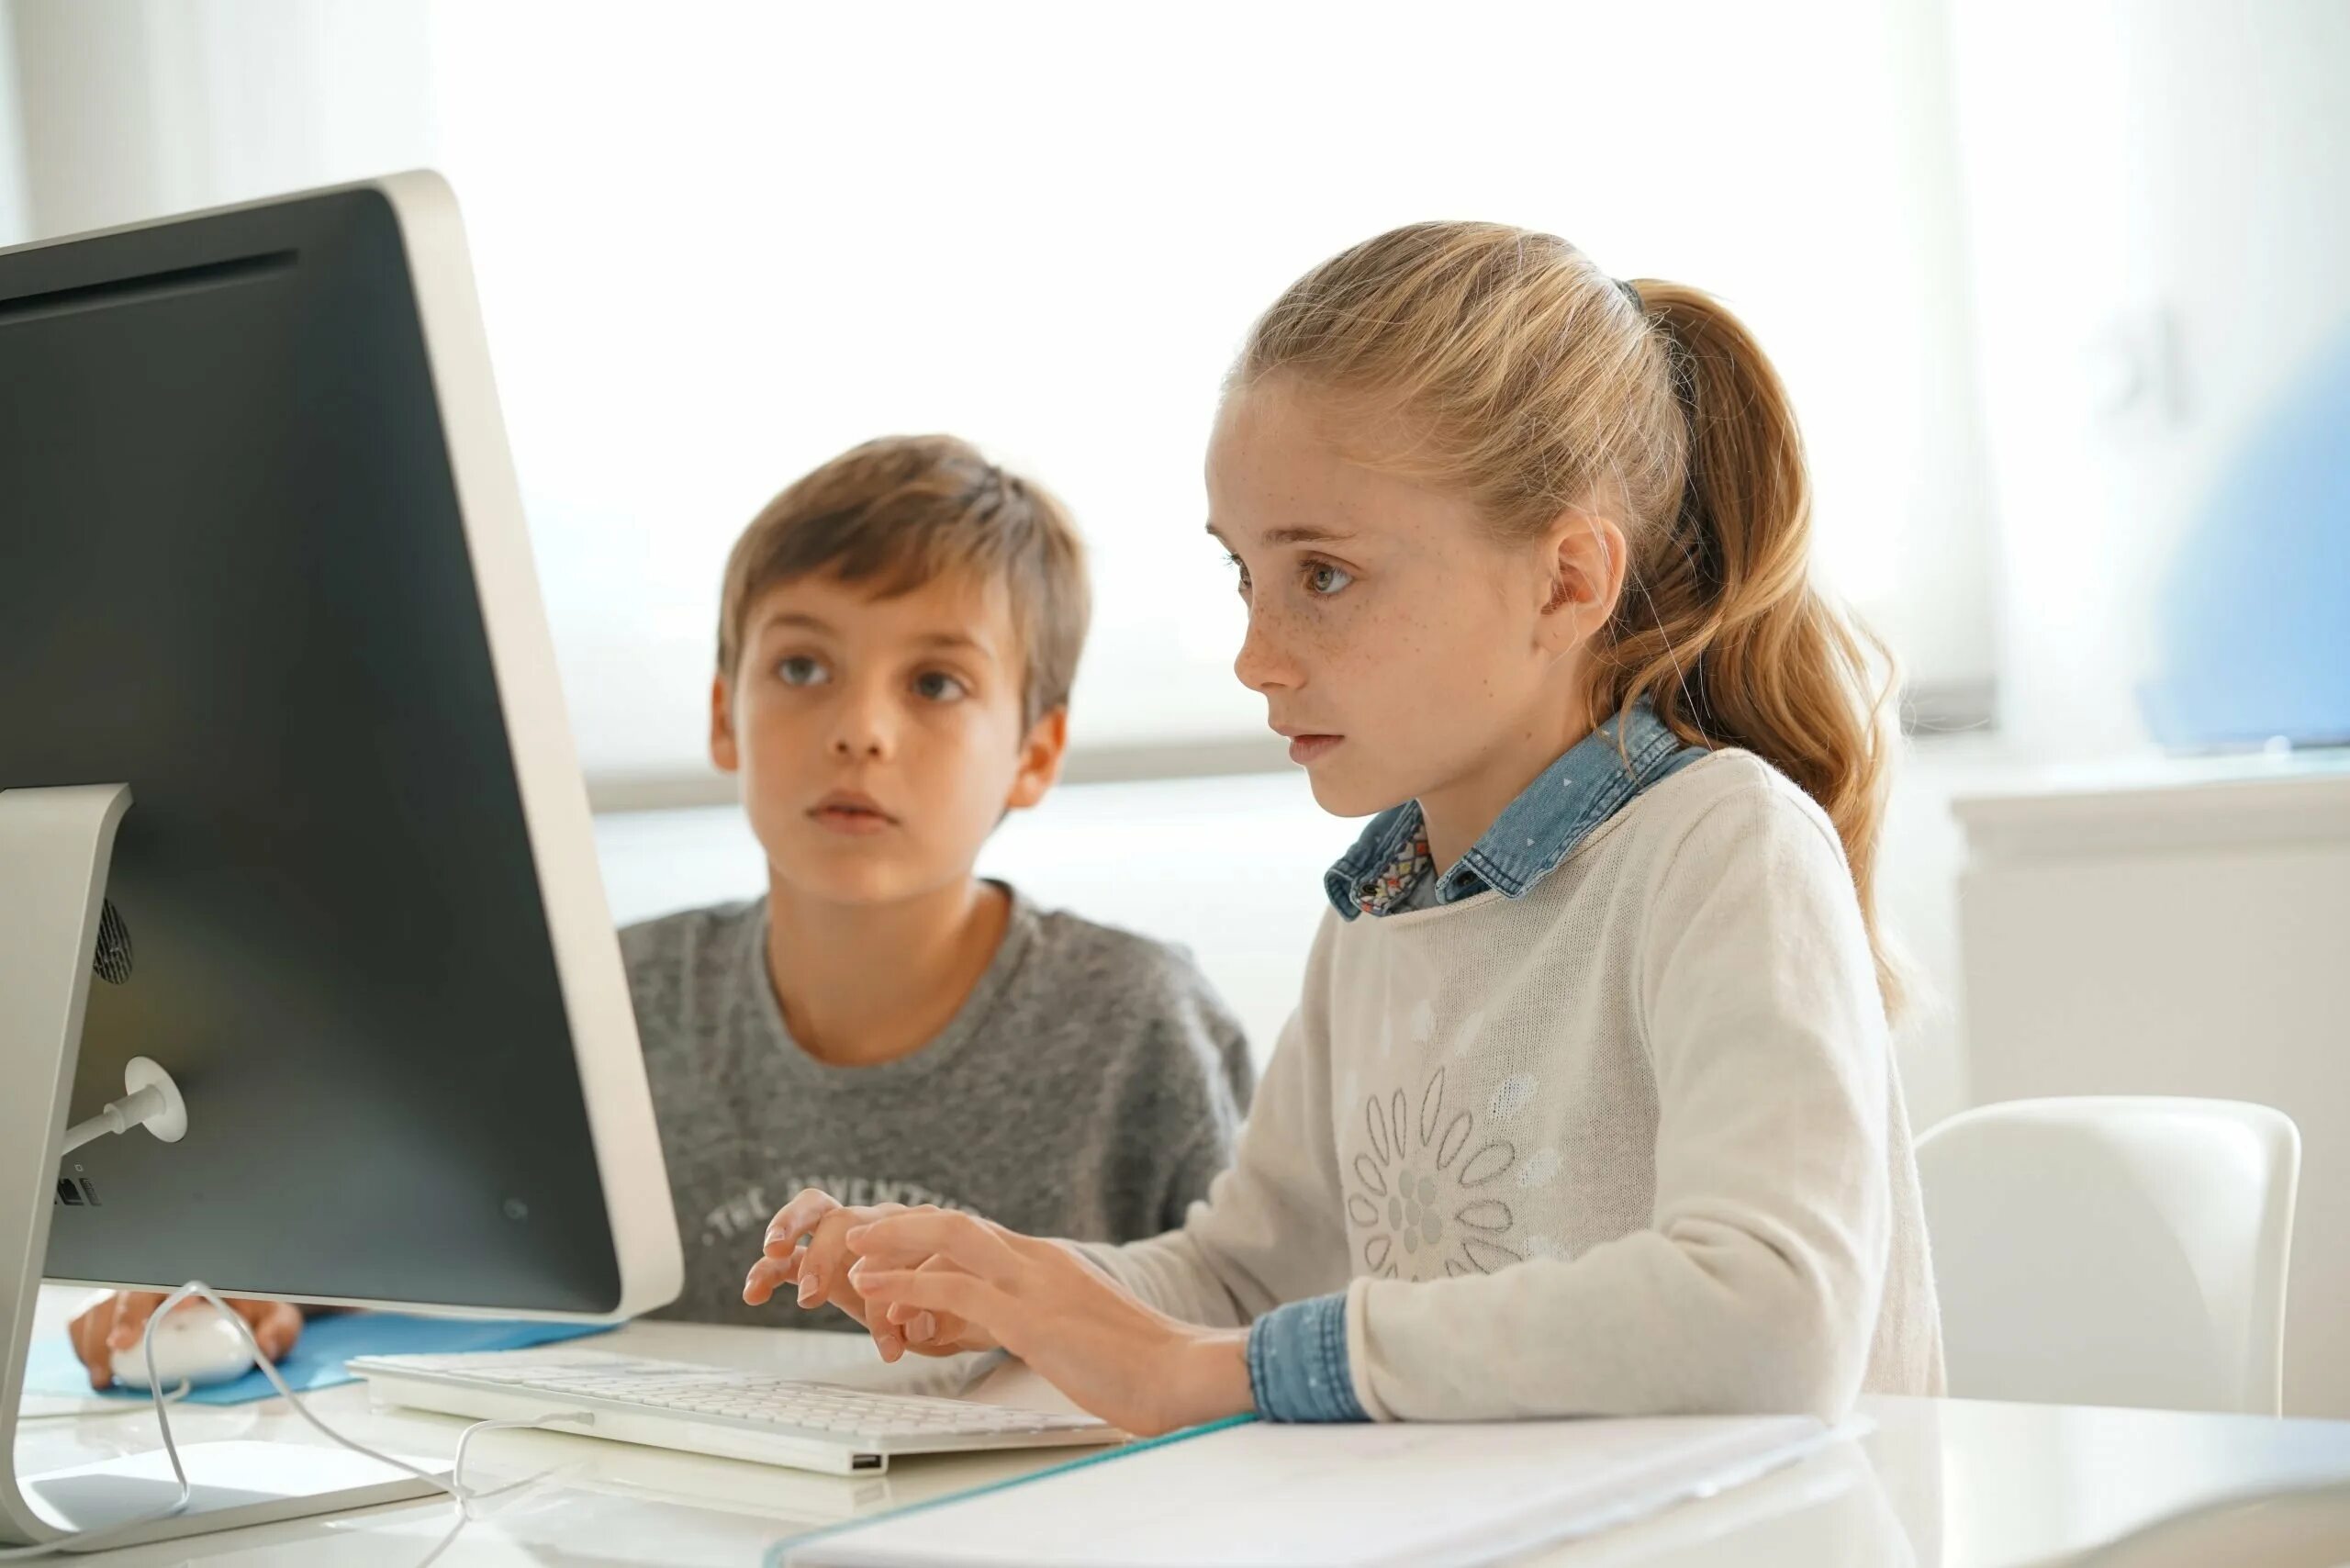 1 класс 1 ученик 1 компьютер. Ребенок за компьютером. Компьютер для школьника. Ученик за компьютером. Школьник в интернете.